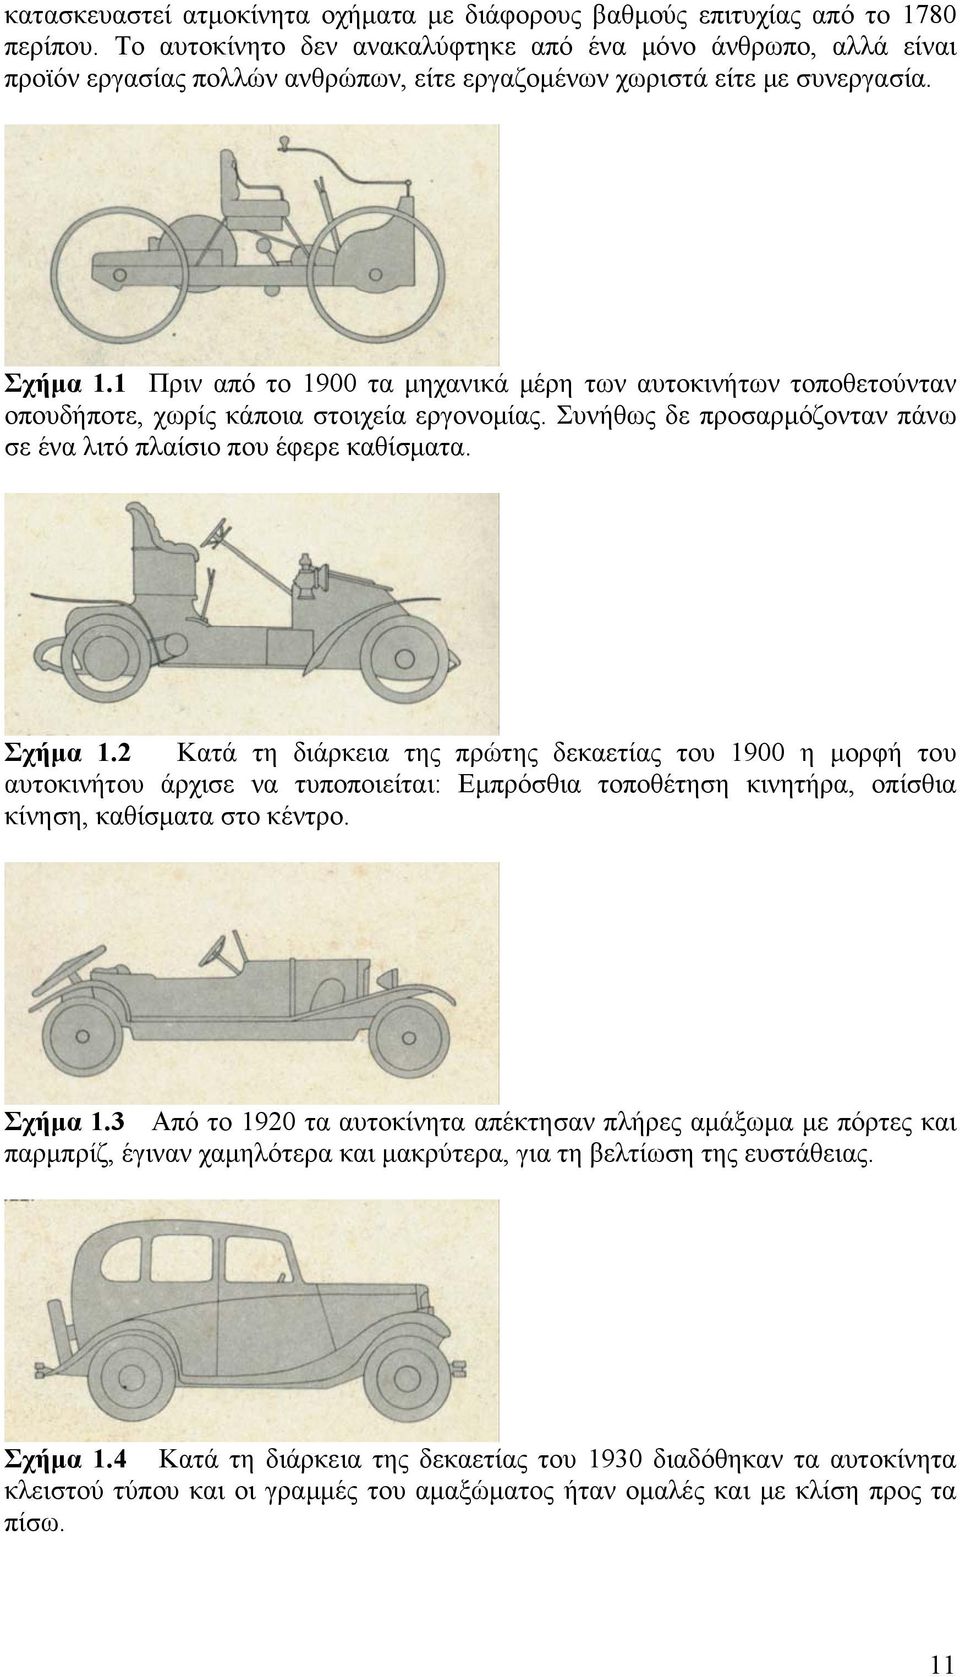 1 Πριν από το 1900 τα μηχανικά μέρη των αυτοκινήτων τοποθετούνταν οπουδήποτε, χωρίς κάποια στοιχεία εργονομίας. Συνήθως δε προσαρμόζονταν πάνω σε ένα λιτό πλαίσιο που έφερε καθίσματα. Σχήμα 1.